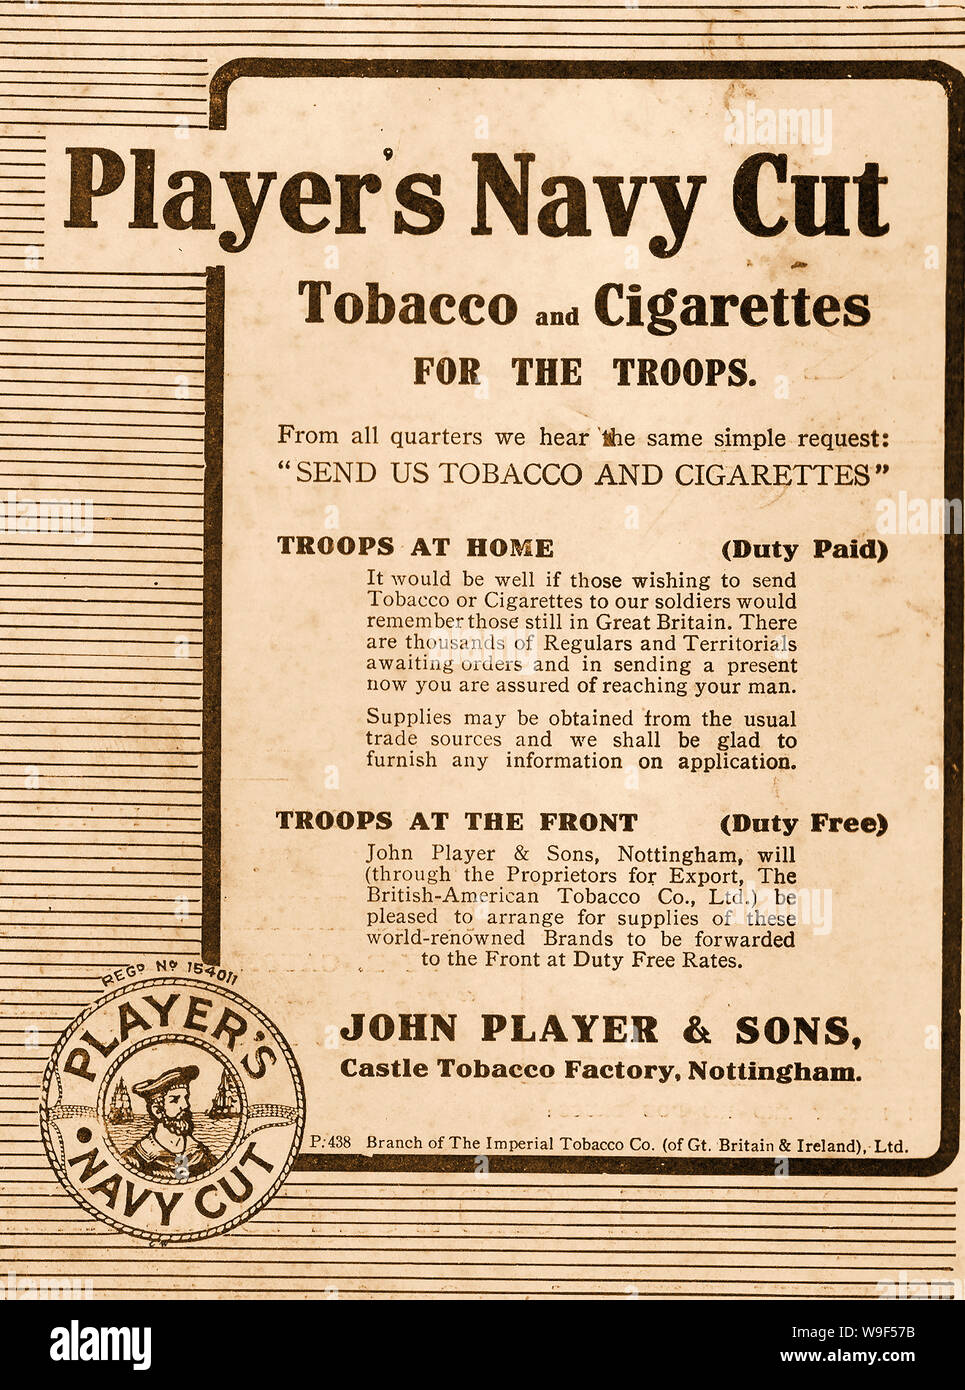 WWI-A 1915 britische Werbespot für Spieler navy cut Zigaretten - Tabak für die Truppen, verzollt oder duty free Stockfoto